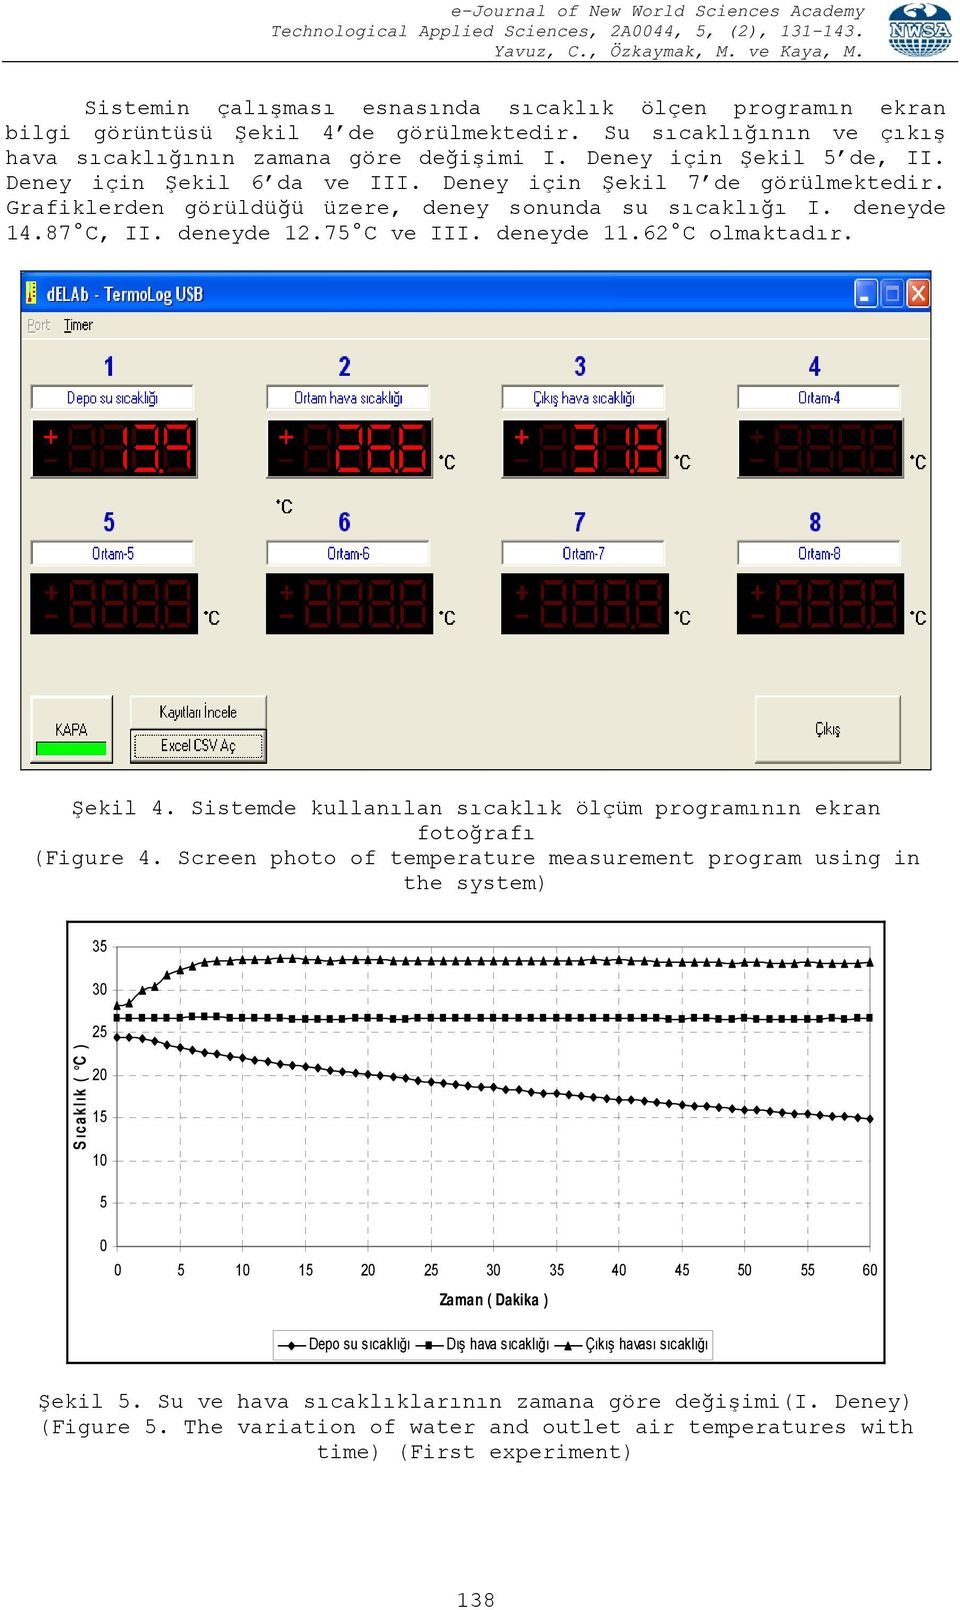 Şekil 4. Sistemde kullanılan sıcaklık ölçüm programının ekran fotoğrafı (igure 4.